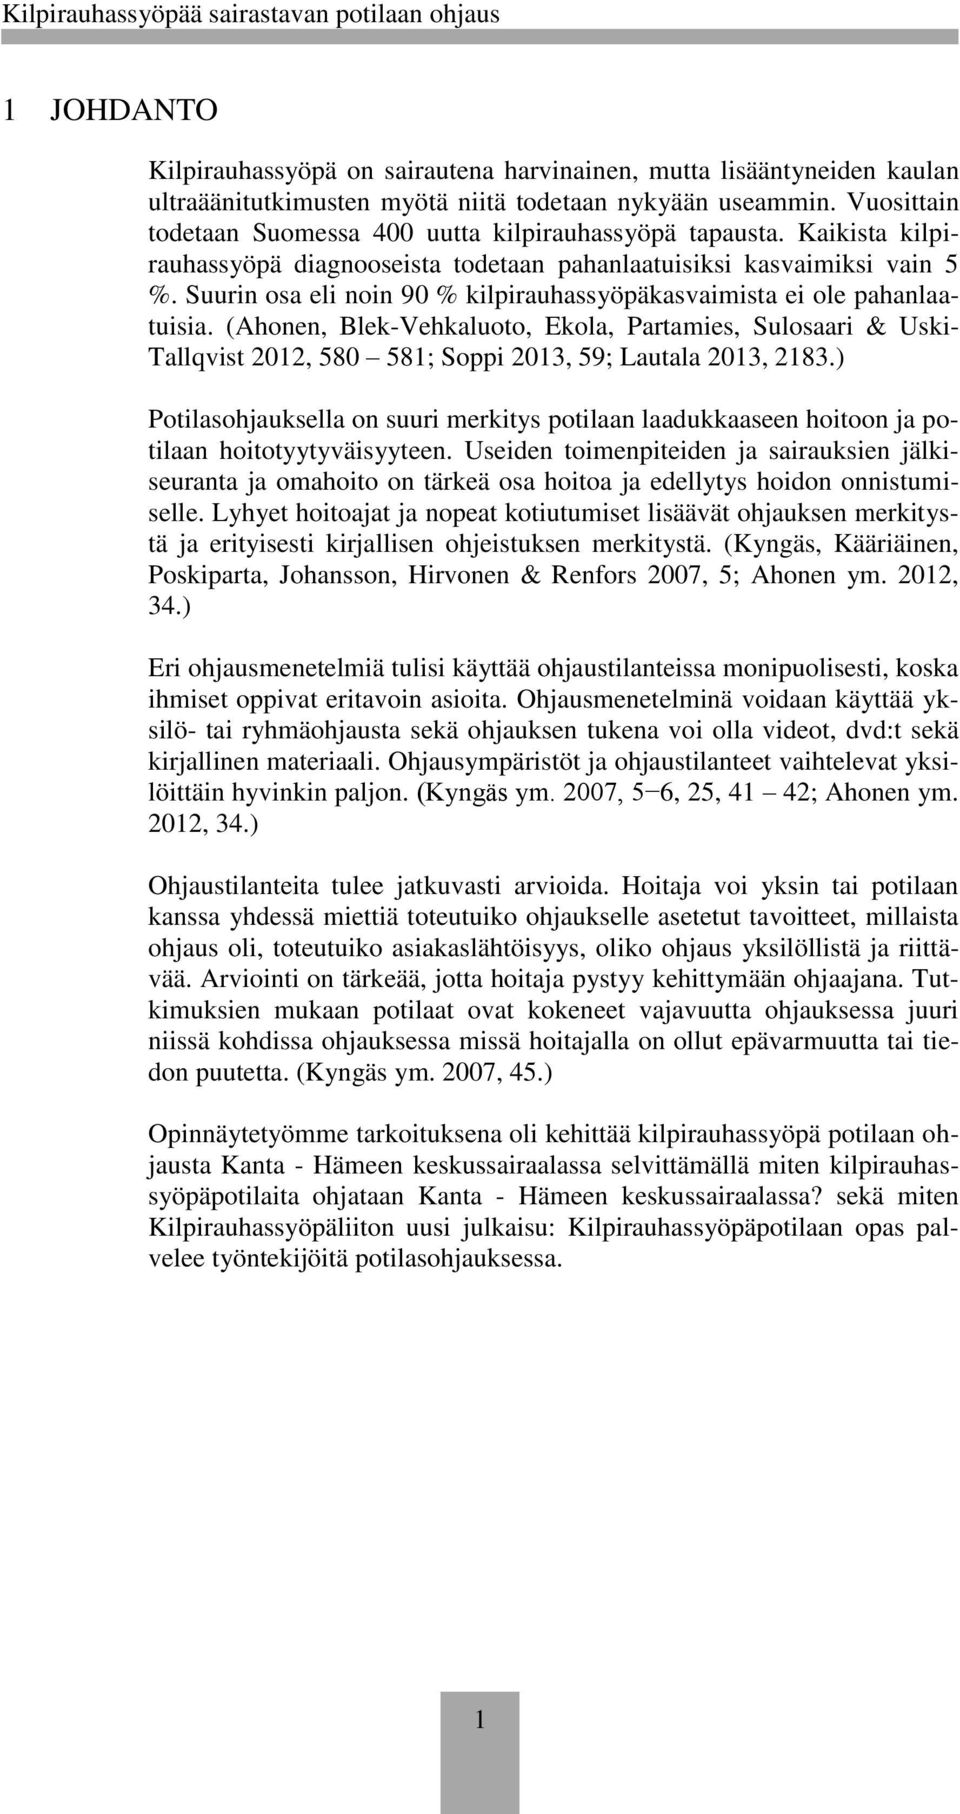 Suurin osa eli noin 90 % kilpirauhassyöpäkasvaimista ei ole pahanlaatuisia. (Ahonen, Blek-Vehkaluoto, Ekola, Partamies, Sulosaari & Uski- Tallqvist 2012, 580 581; Soppi 2013, 59; Lautala 2013, 2183.